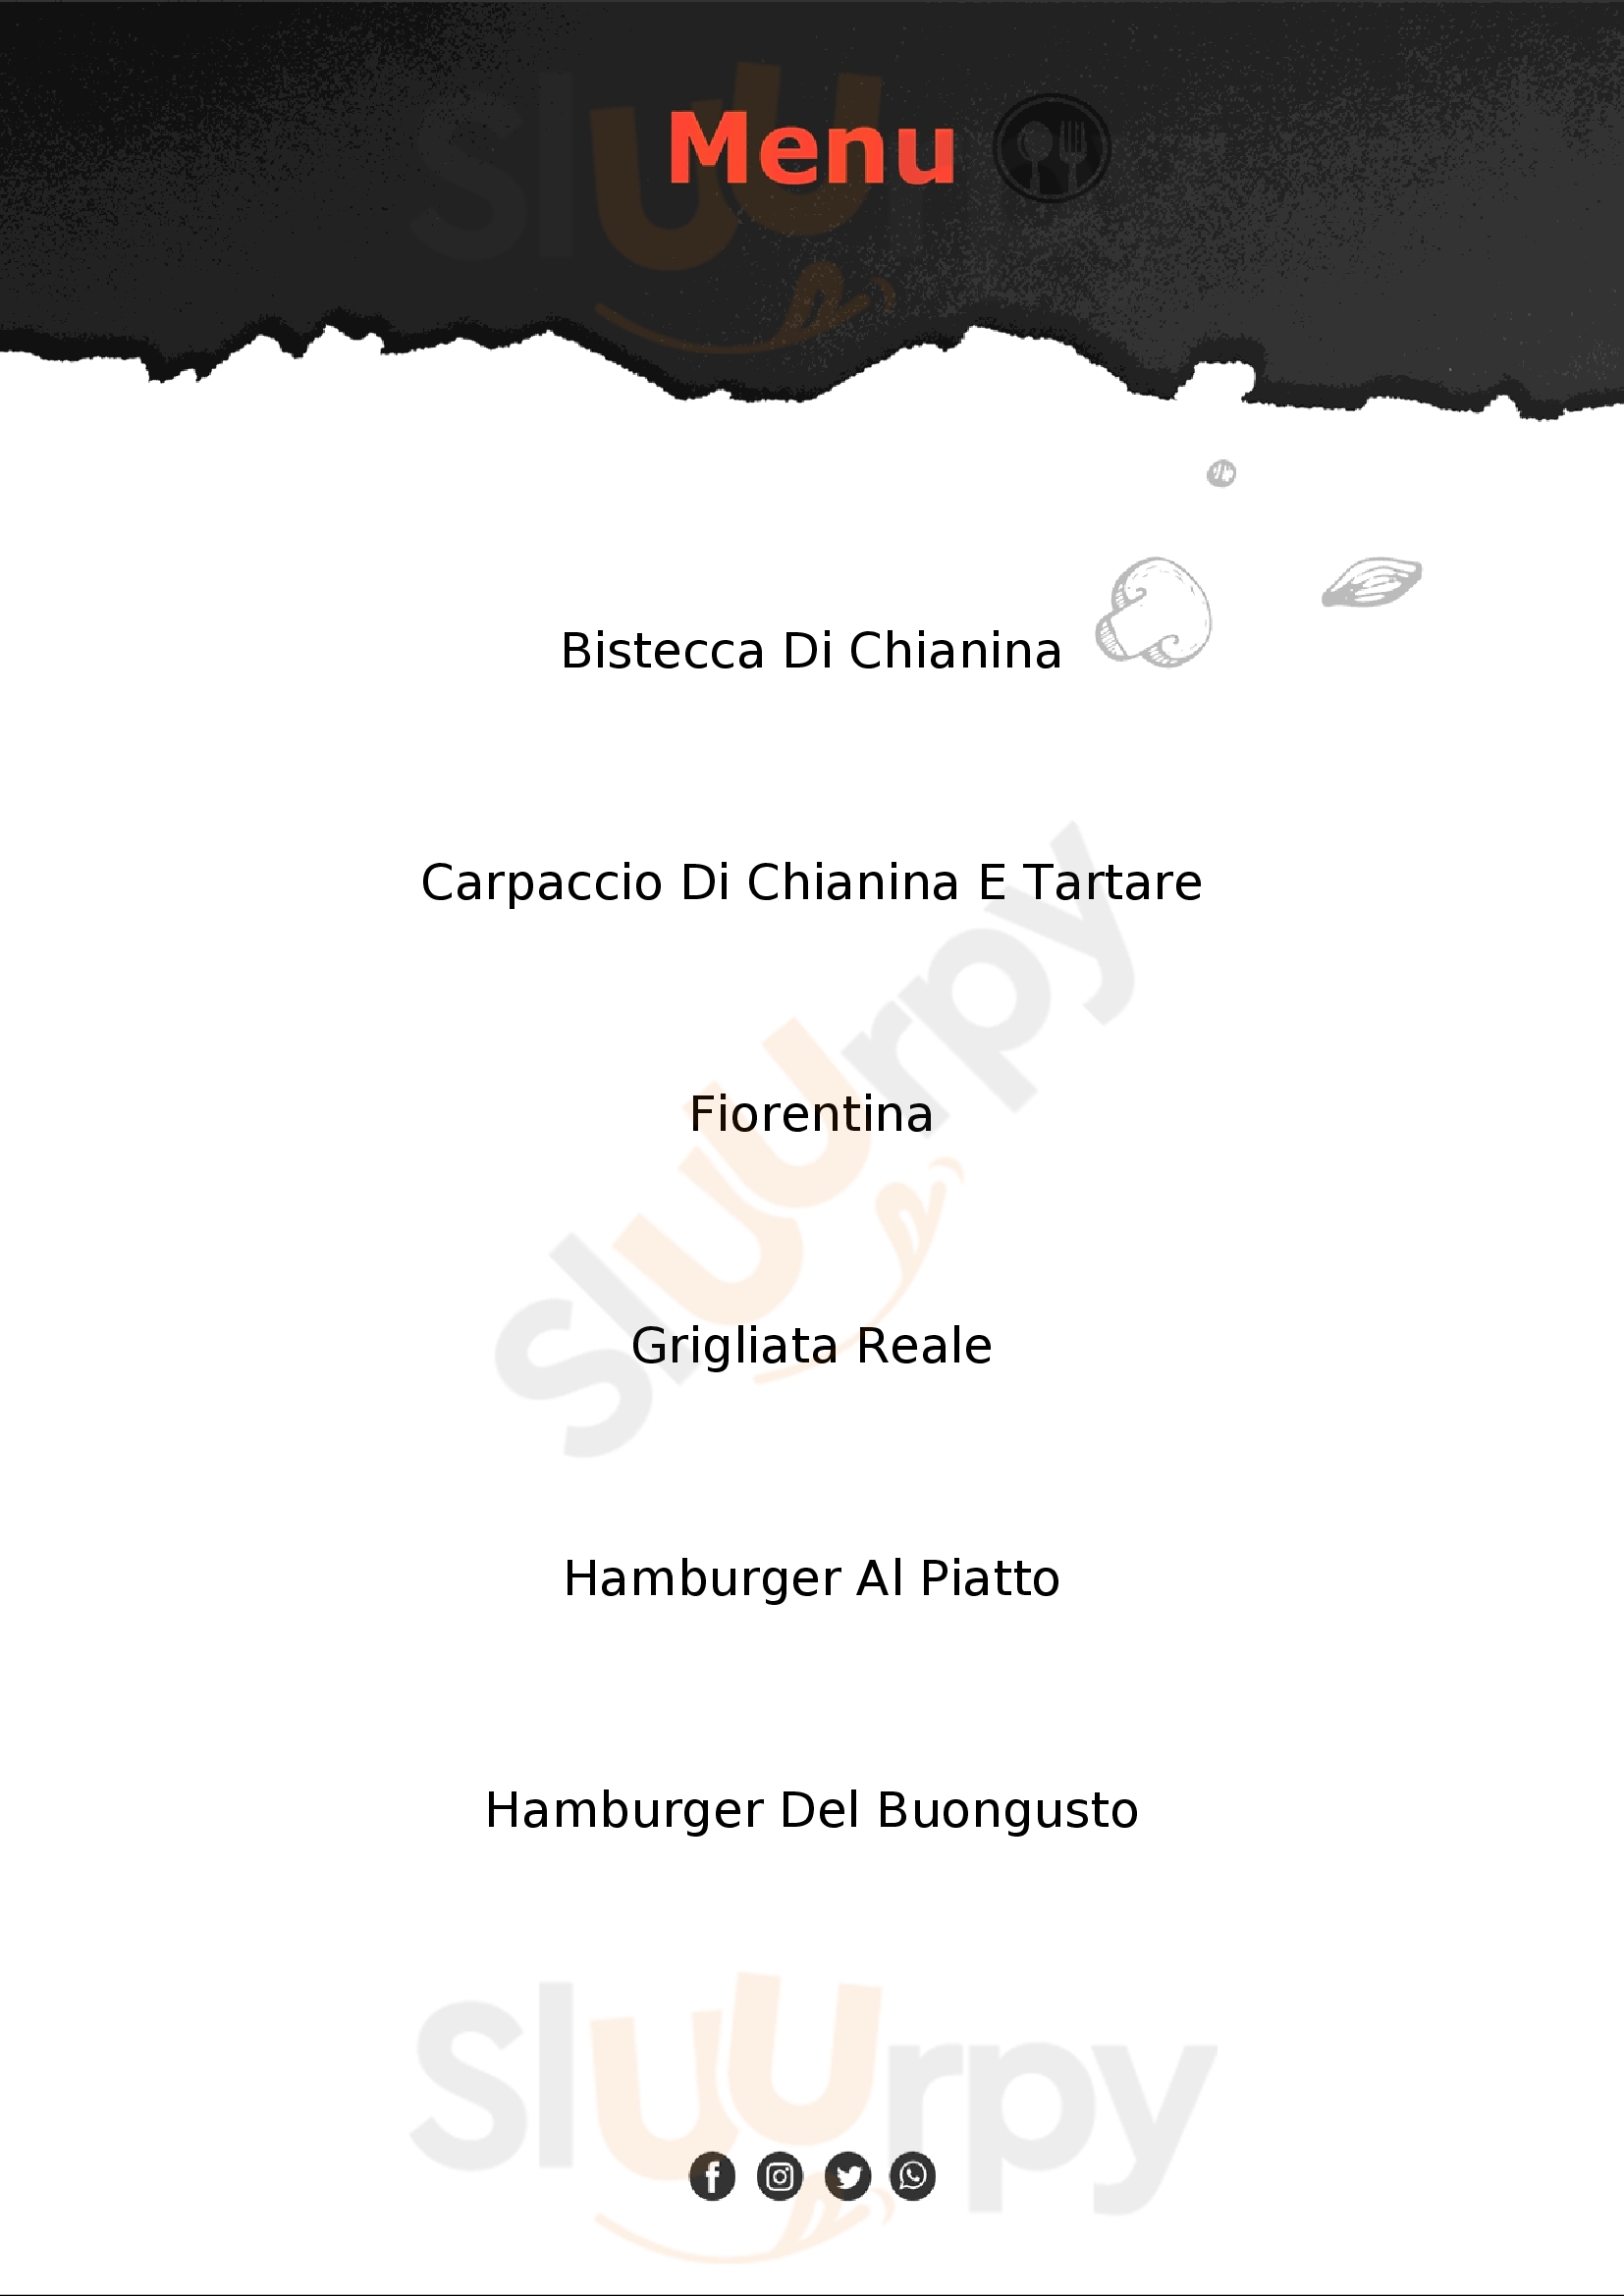 Hamburgeria Buongusto Siena menù 1 pagina